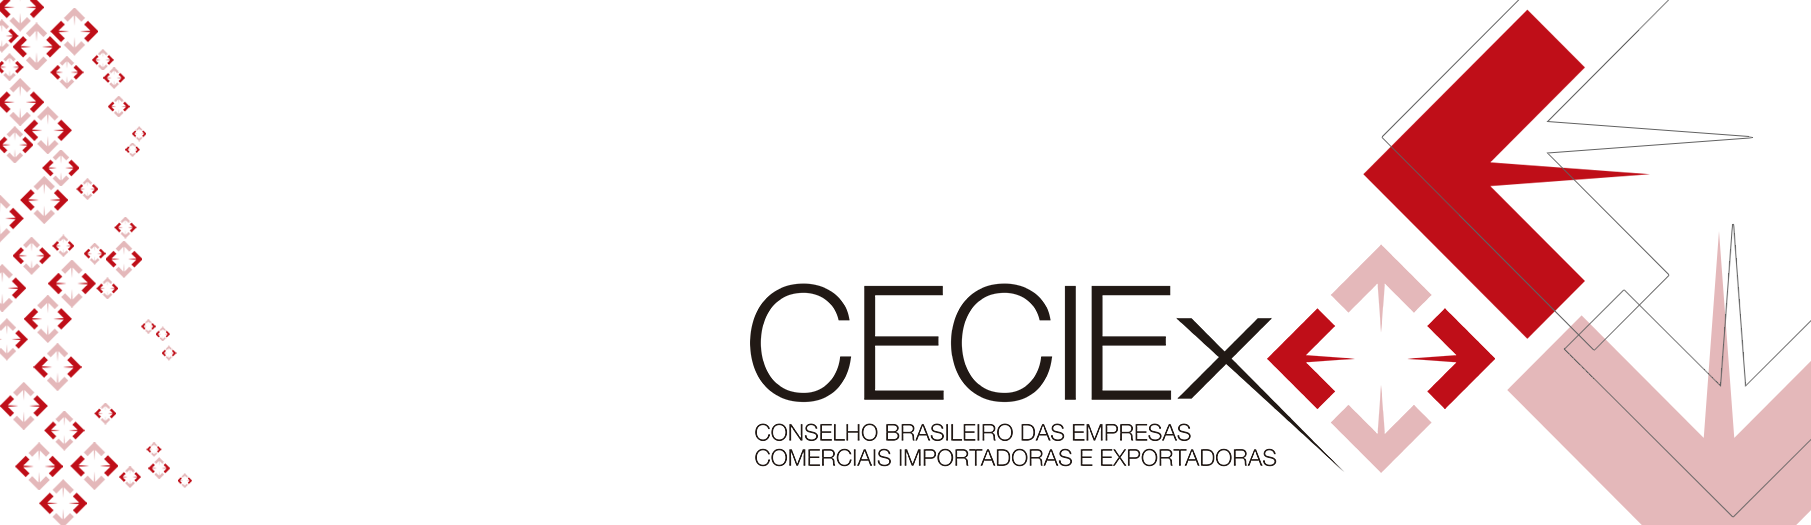 CECIEx - Conselho Brasileiro das Empresas Comerciais Importadoras e Exportadoras